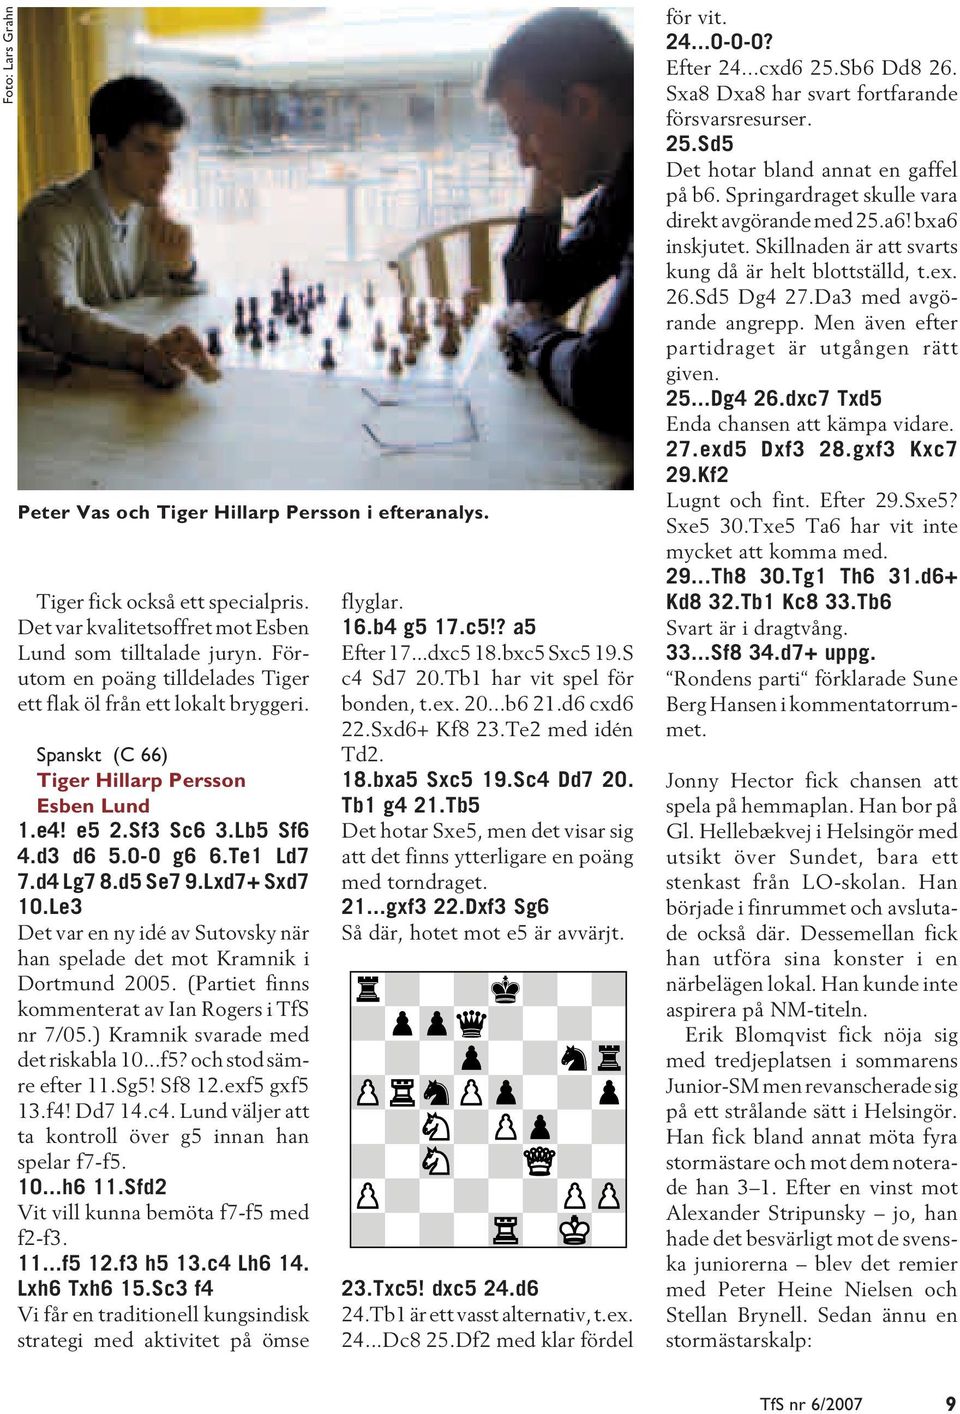 Lxd7+ Sxd7 10.Le3 Det var en ny idé av Sutovsky när han spelade det mot Kramnik i Dortmund 2005. (Partiet finns kommenterat av Ian Rogers i TfS nr 7/05.) Kramnik svarade med det riskabla 10...f5?